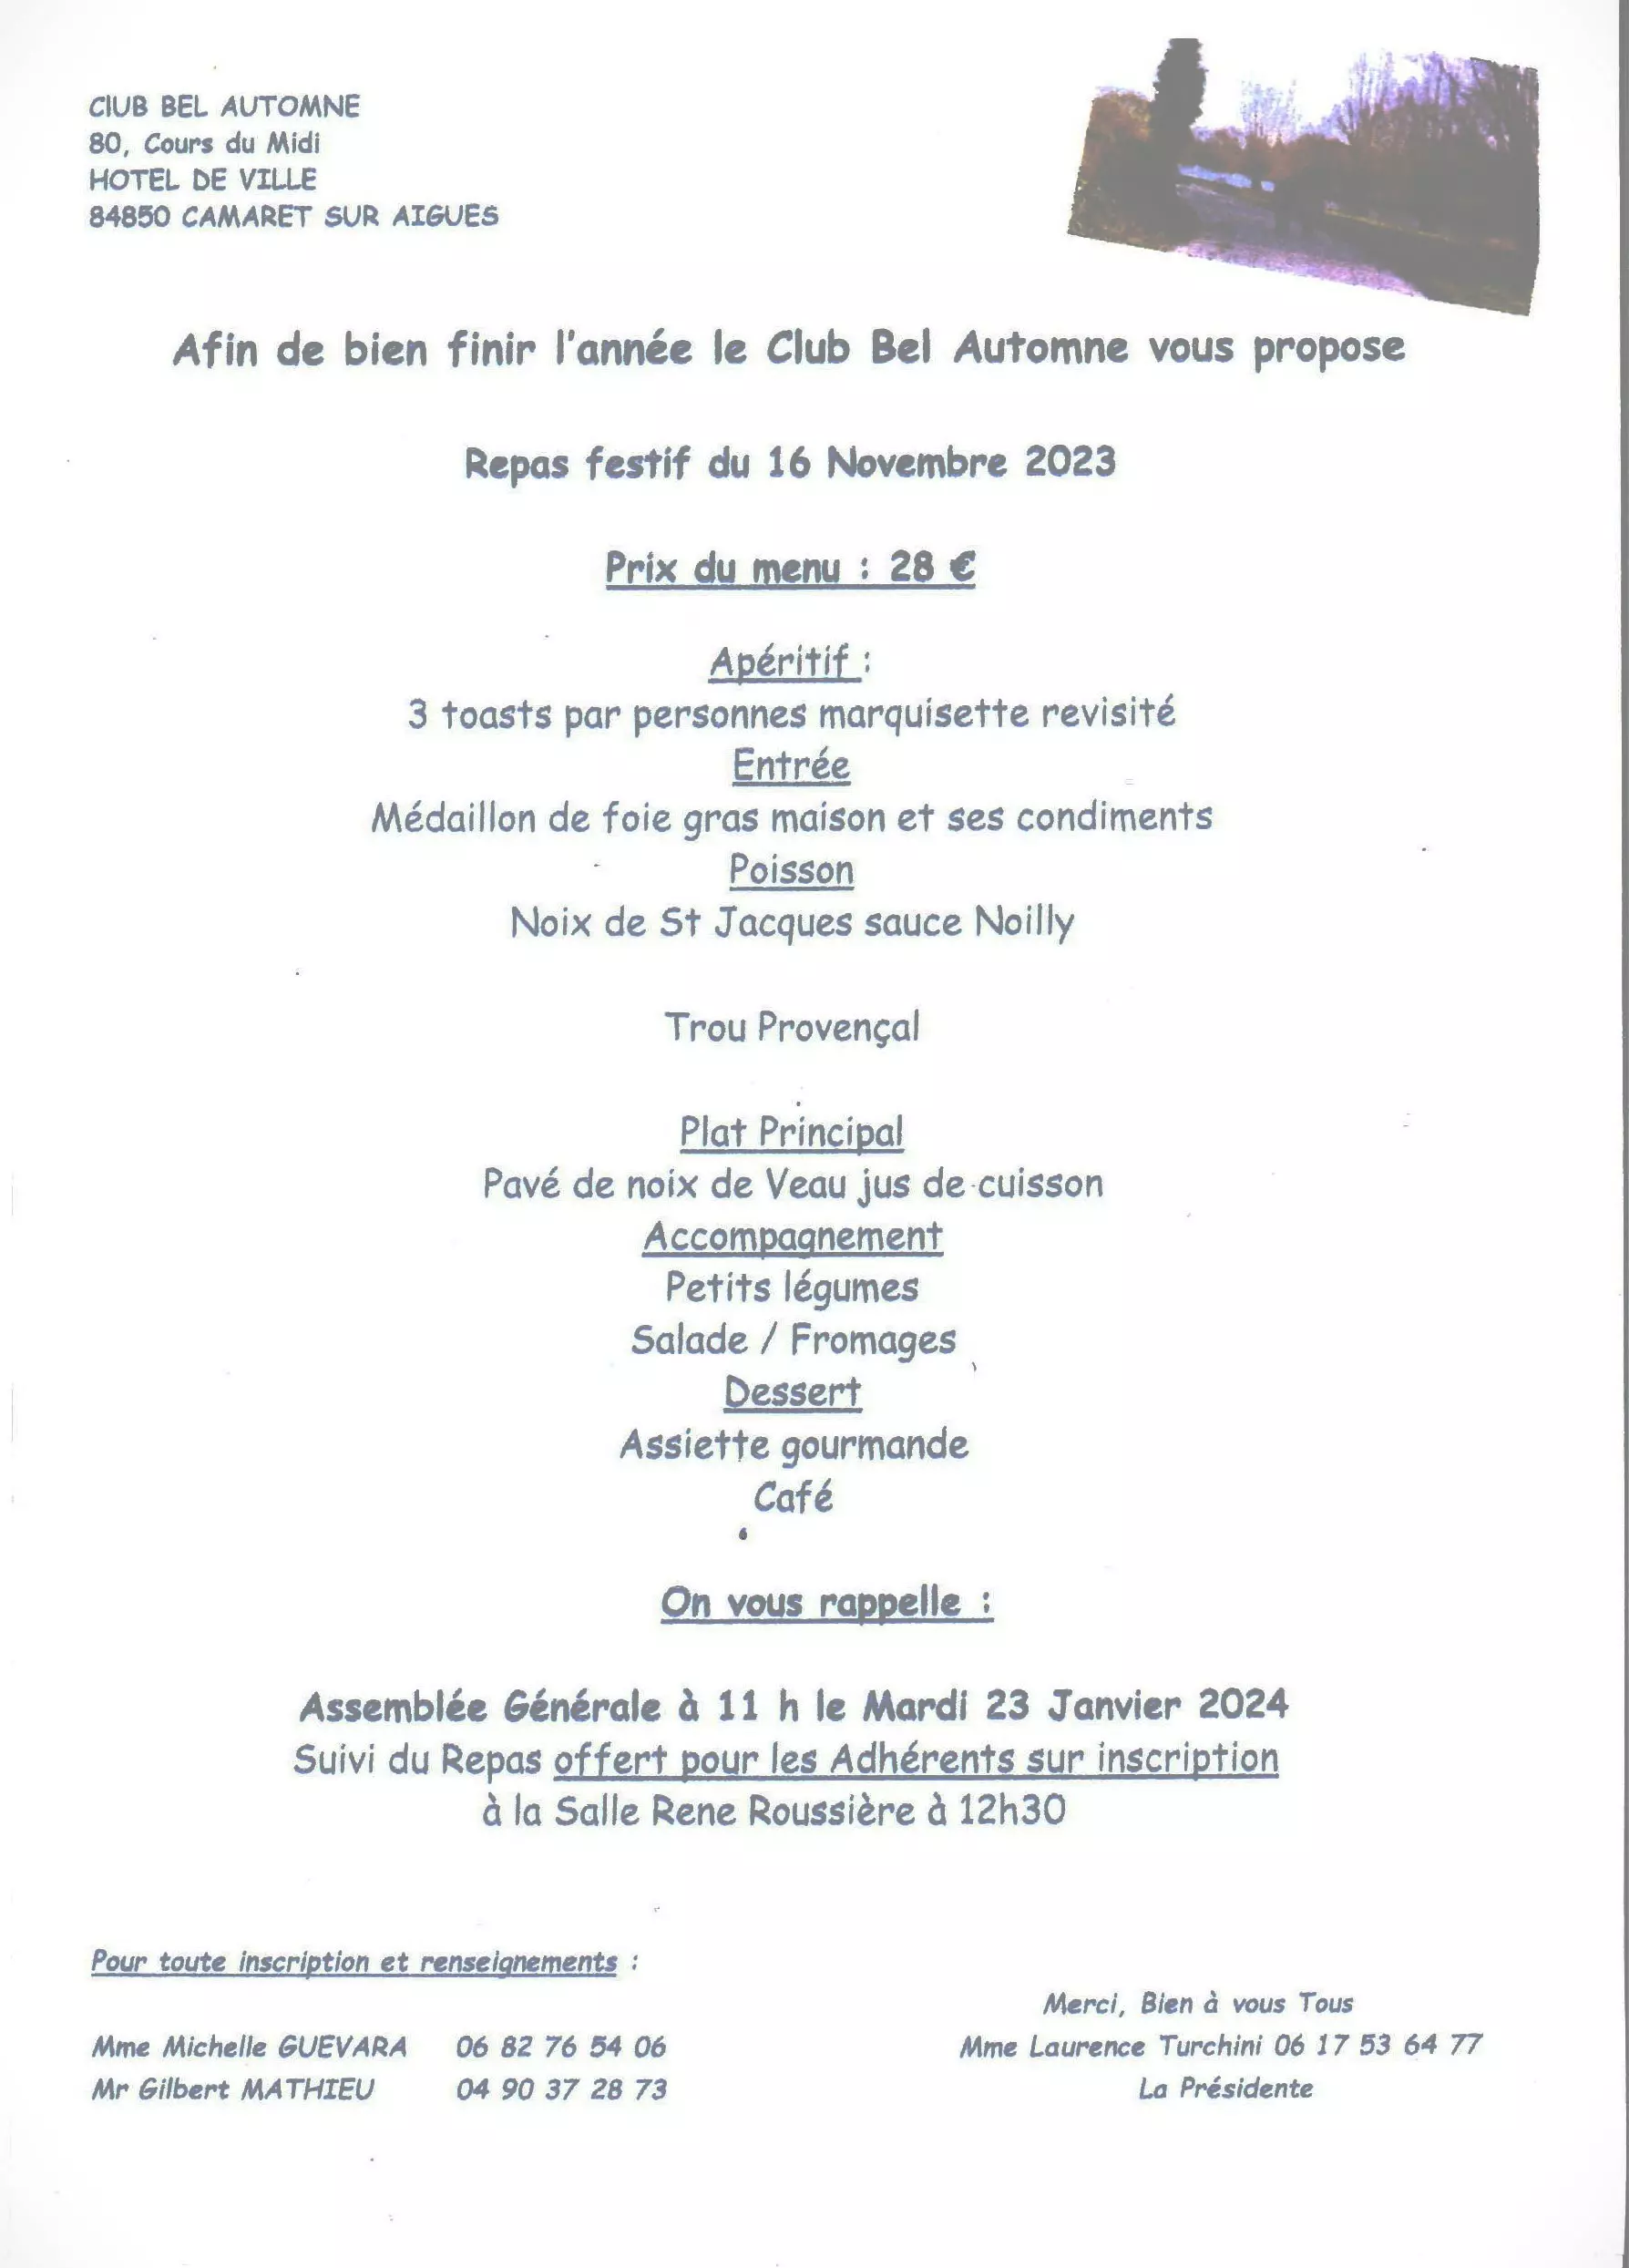 Repas festif de fin d'année du Club Bel Automne le jeudi 16 novembre à 12h00 à la salle René Roussière